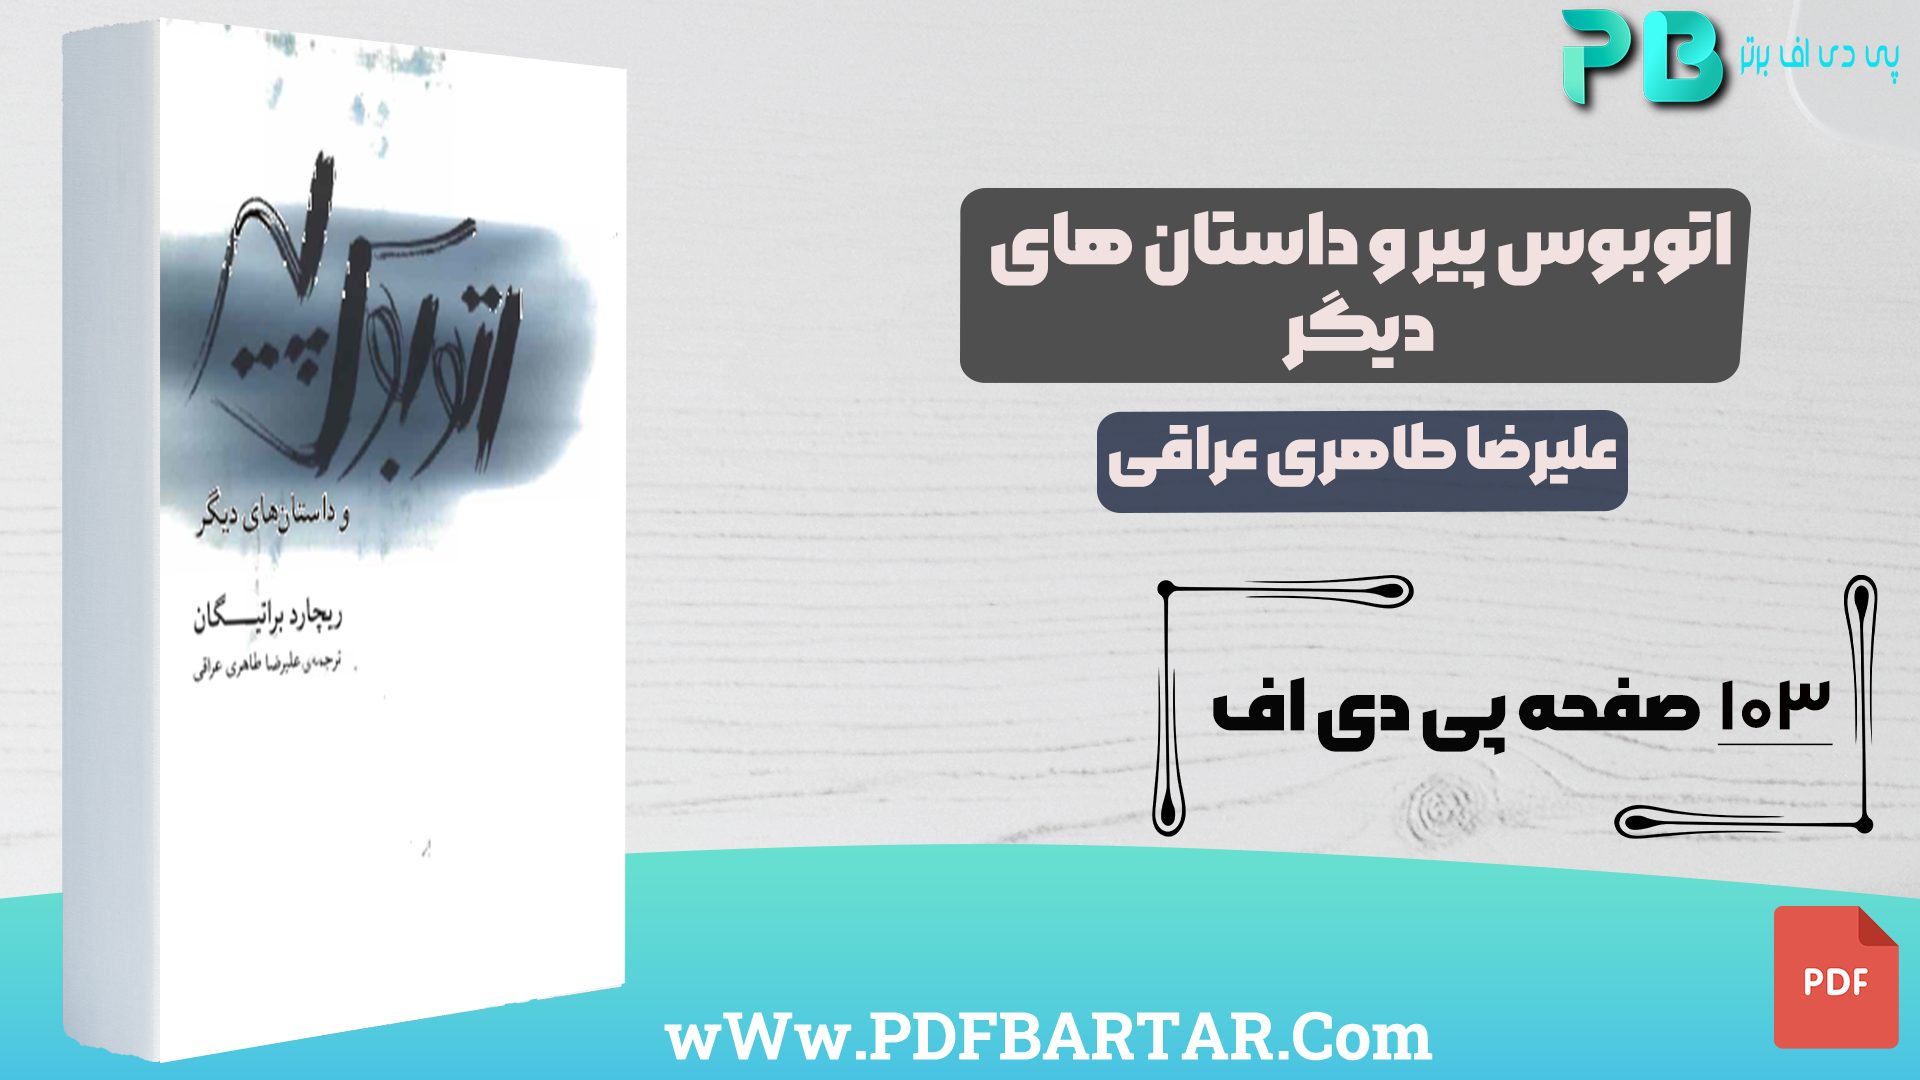 دانلود پی دی اف کتاب اتوبوس پیر و داستان های دیگر علیرضا طاهری عراقی PDF - پی دی اف برتر